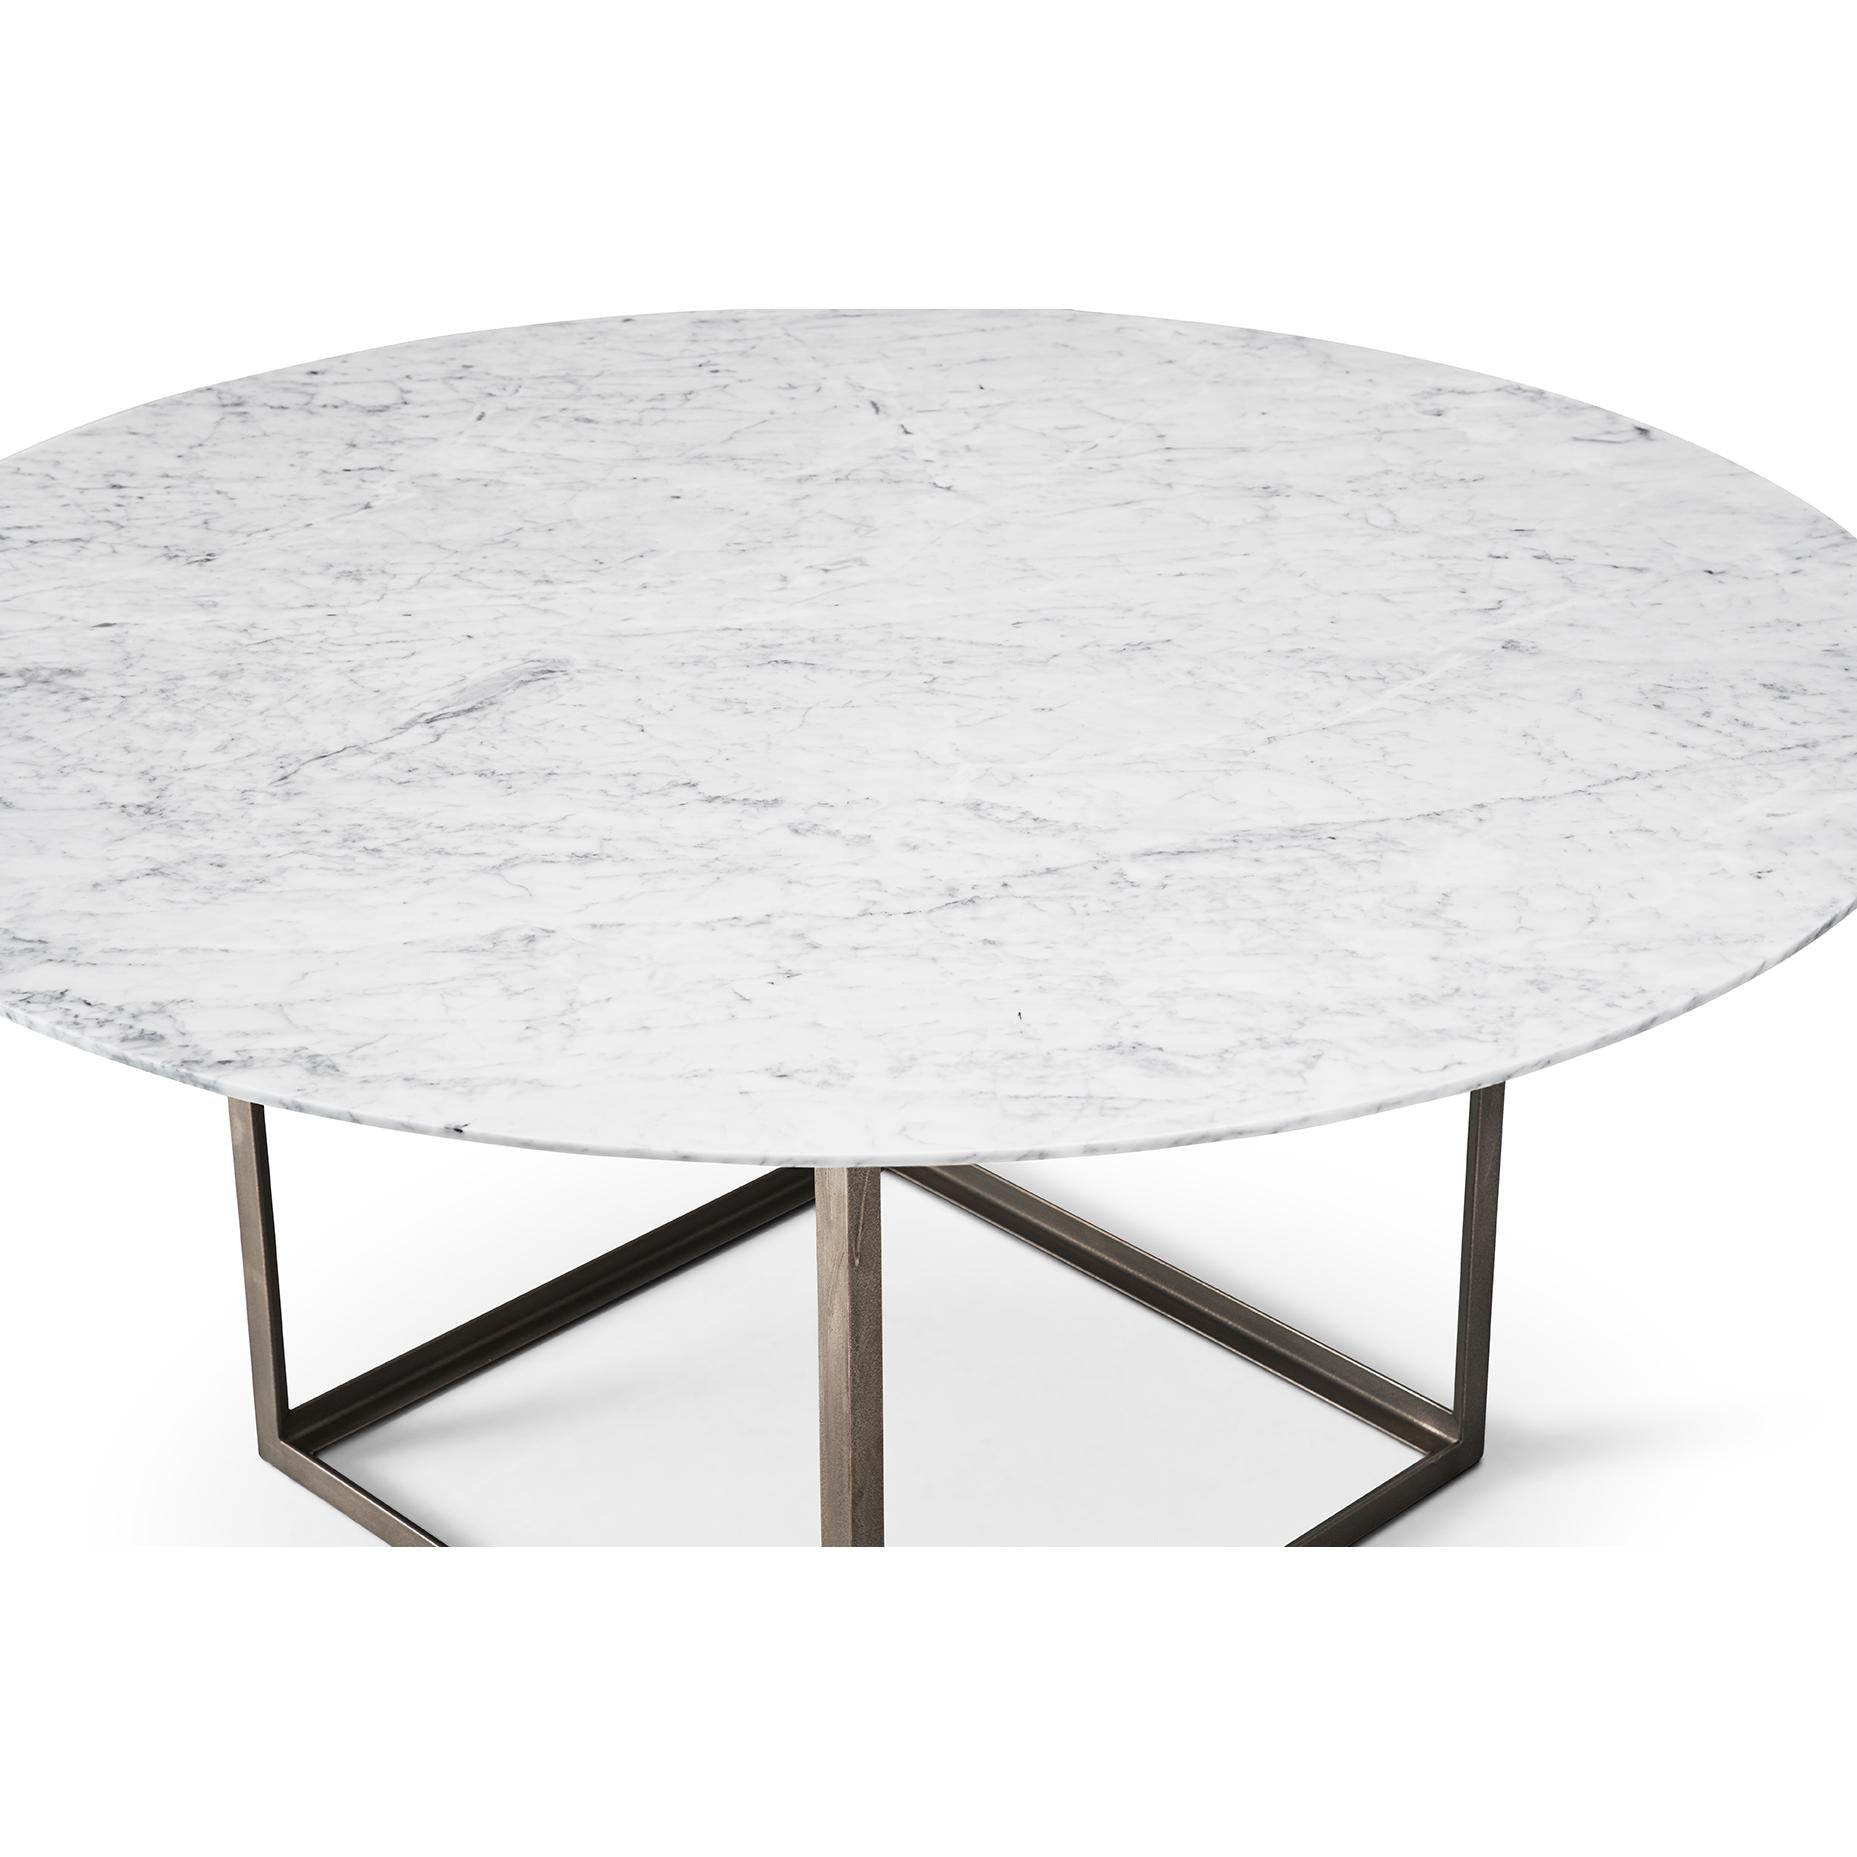 DK3 juvel rund matbord marmor Ø150 cm, carrara